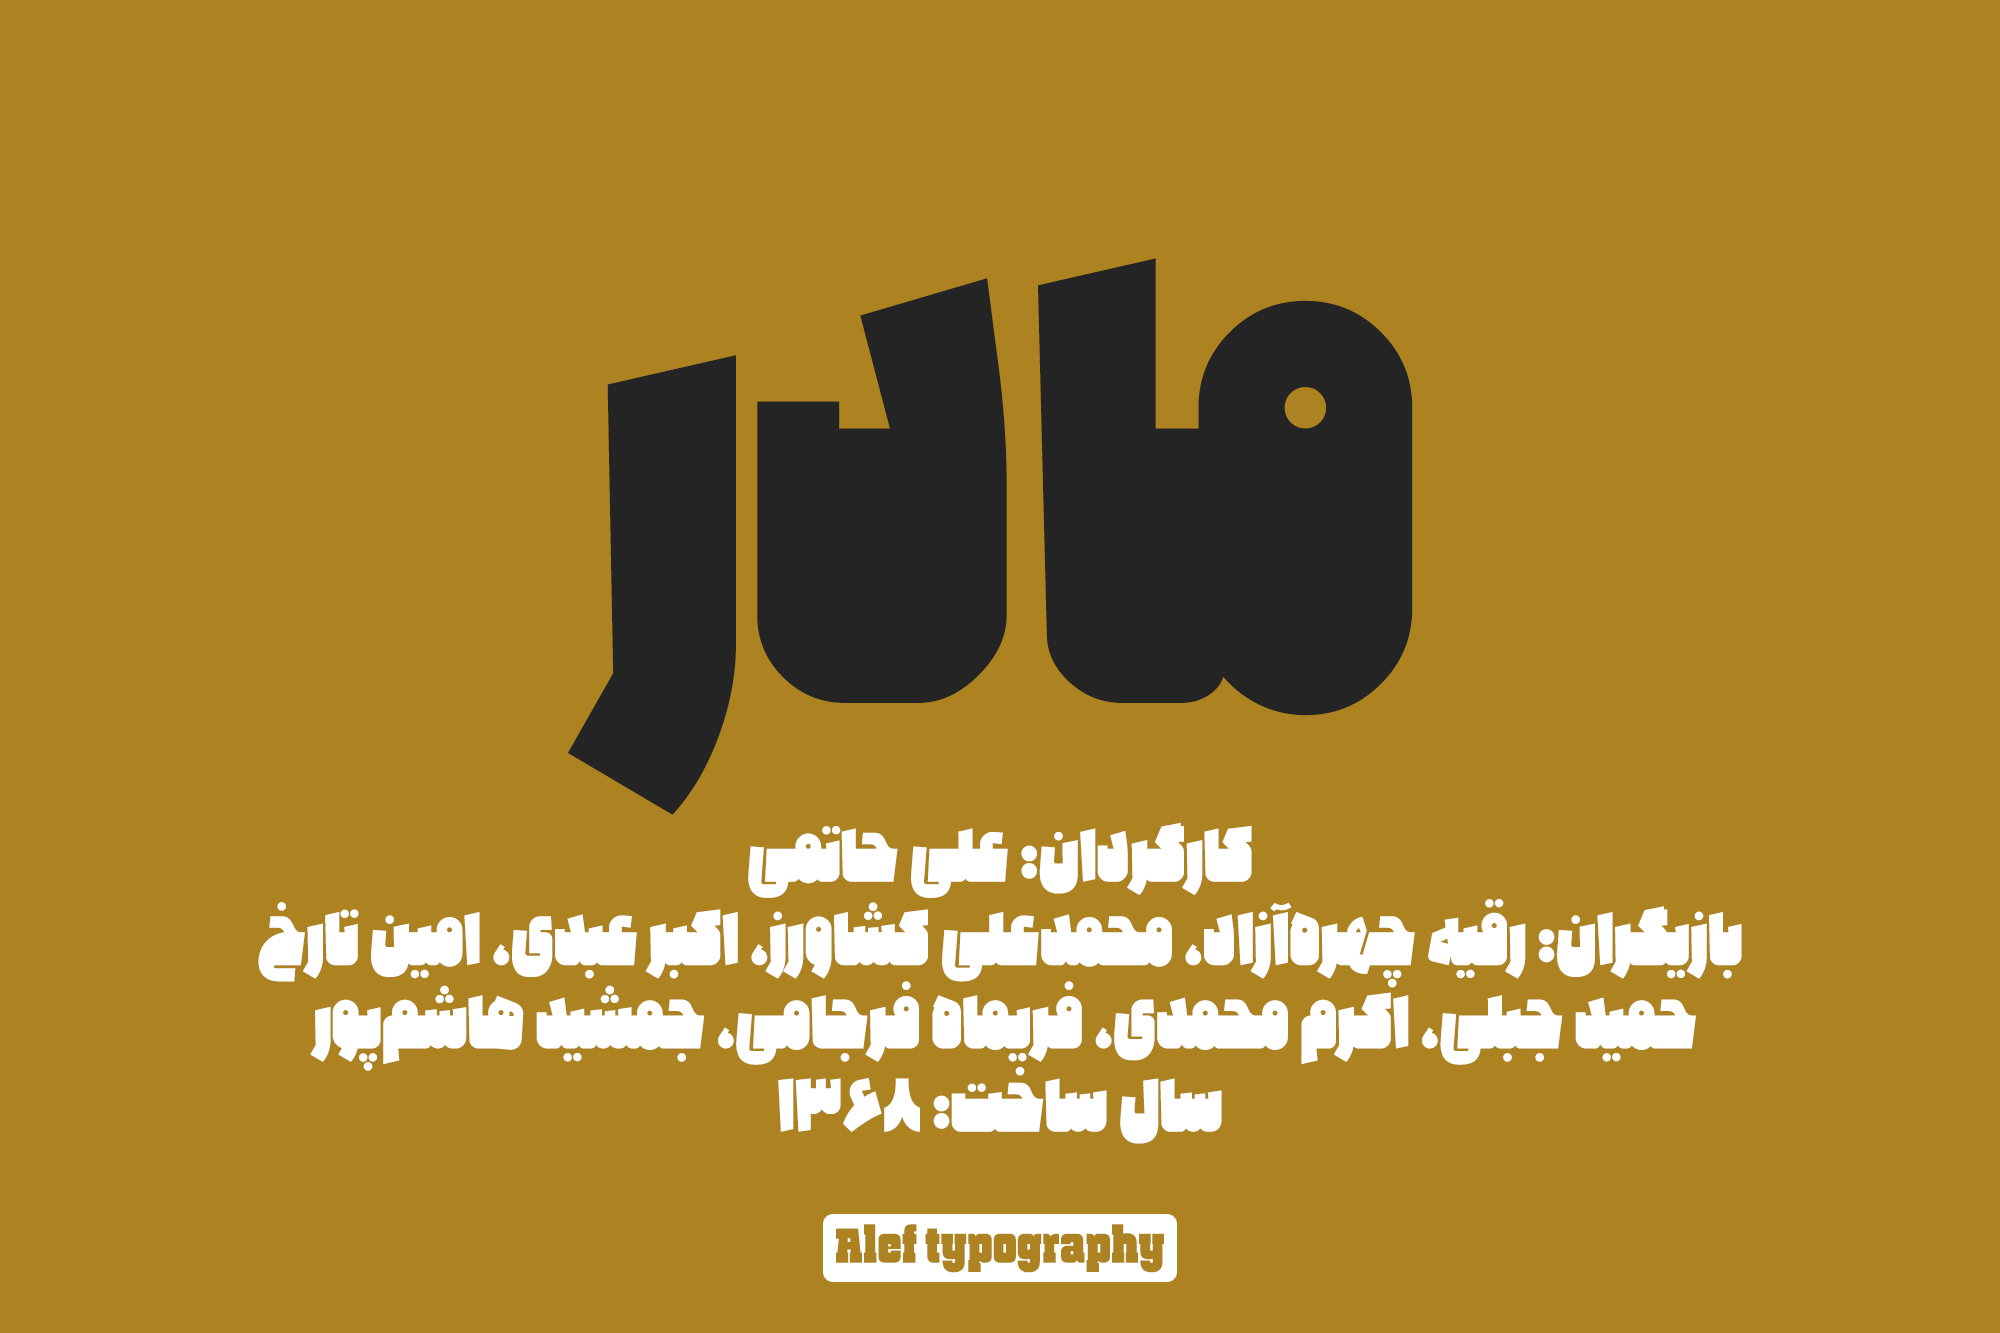 Alef-typography04